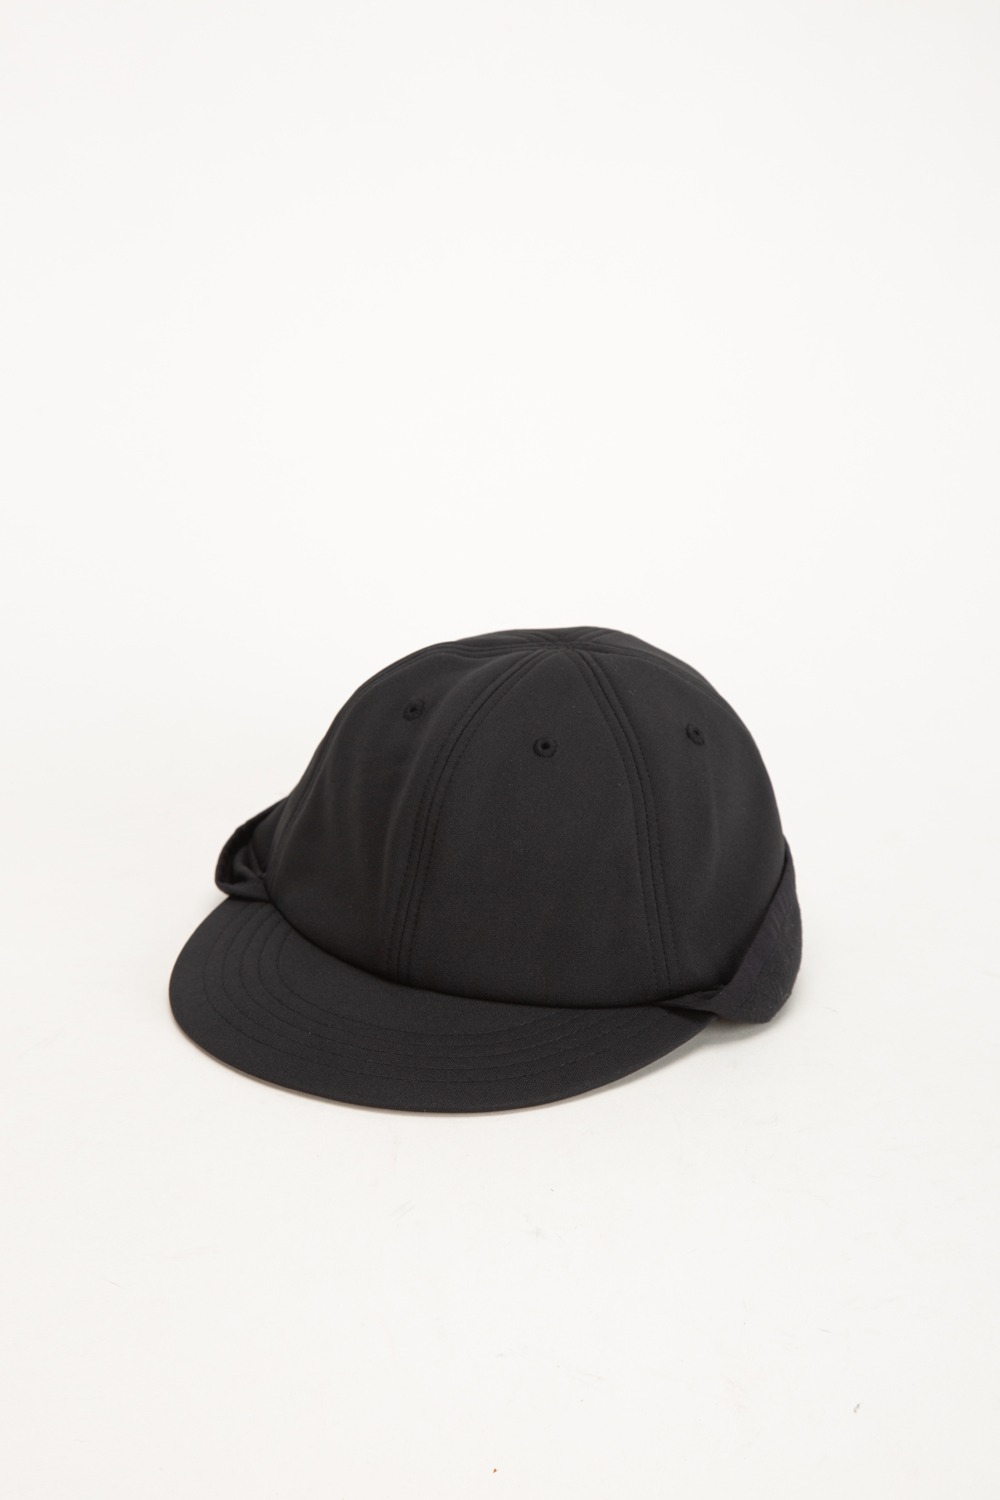 KARUISHI CAP BLACK